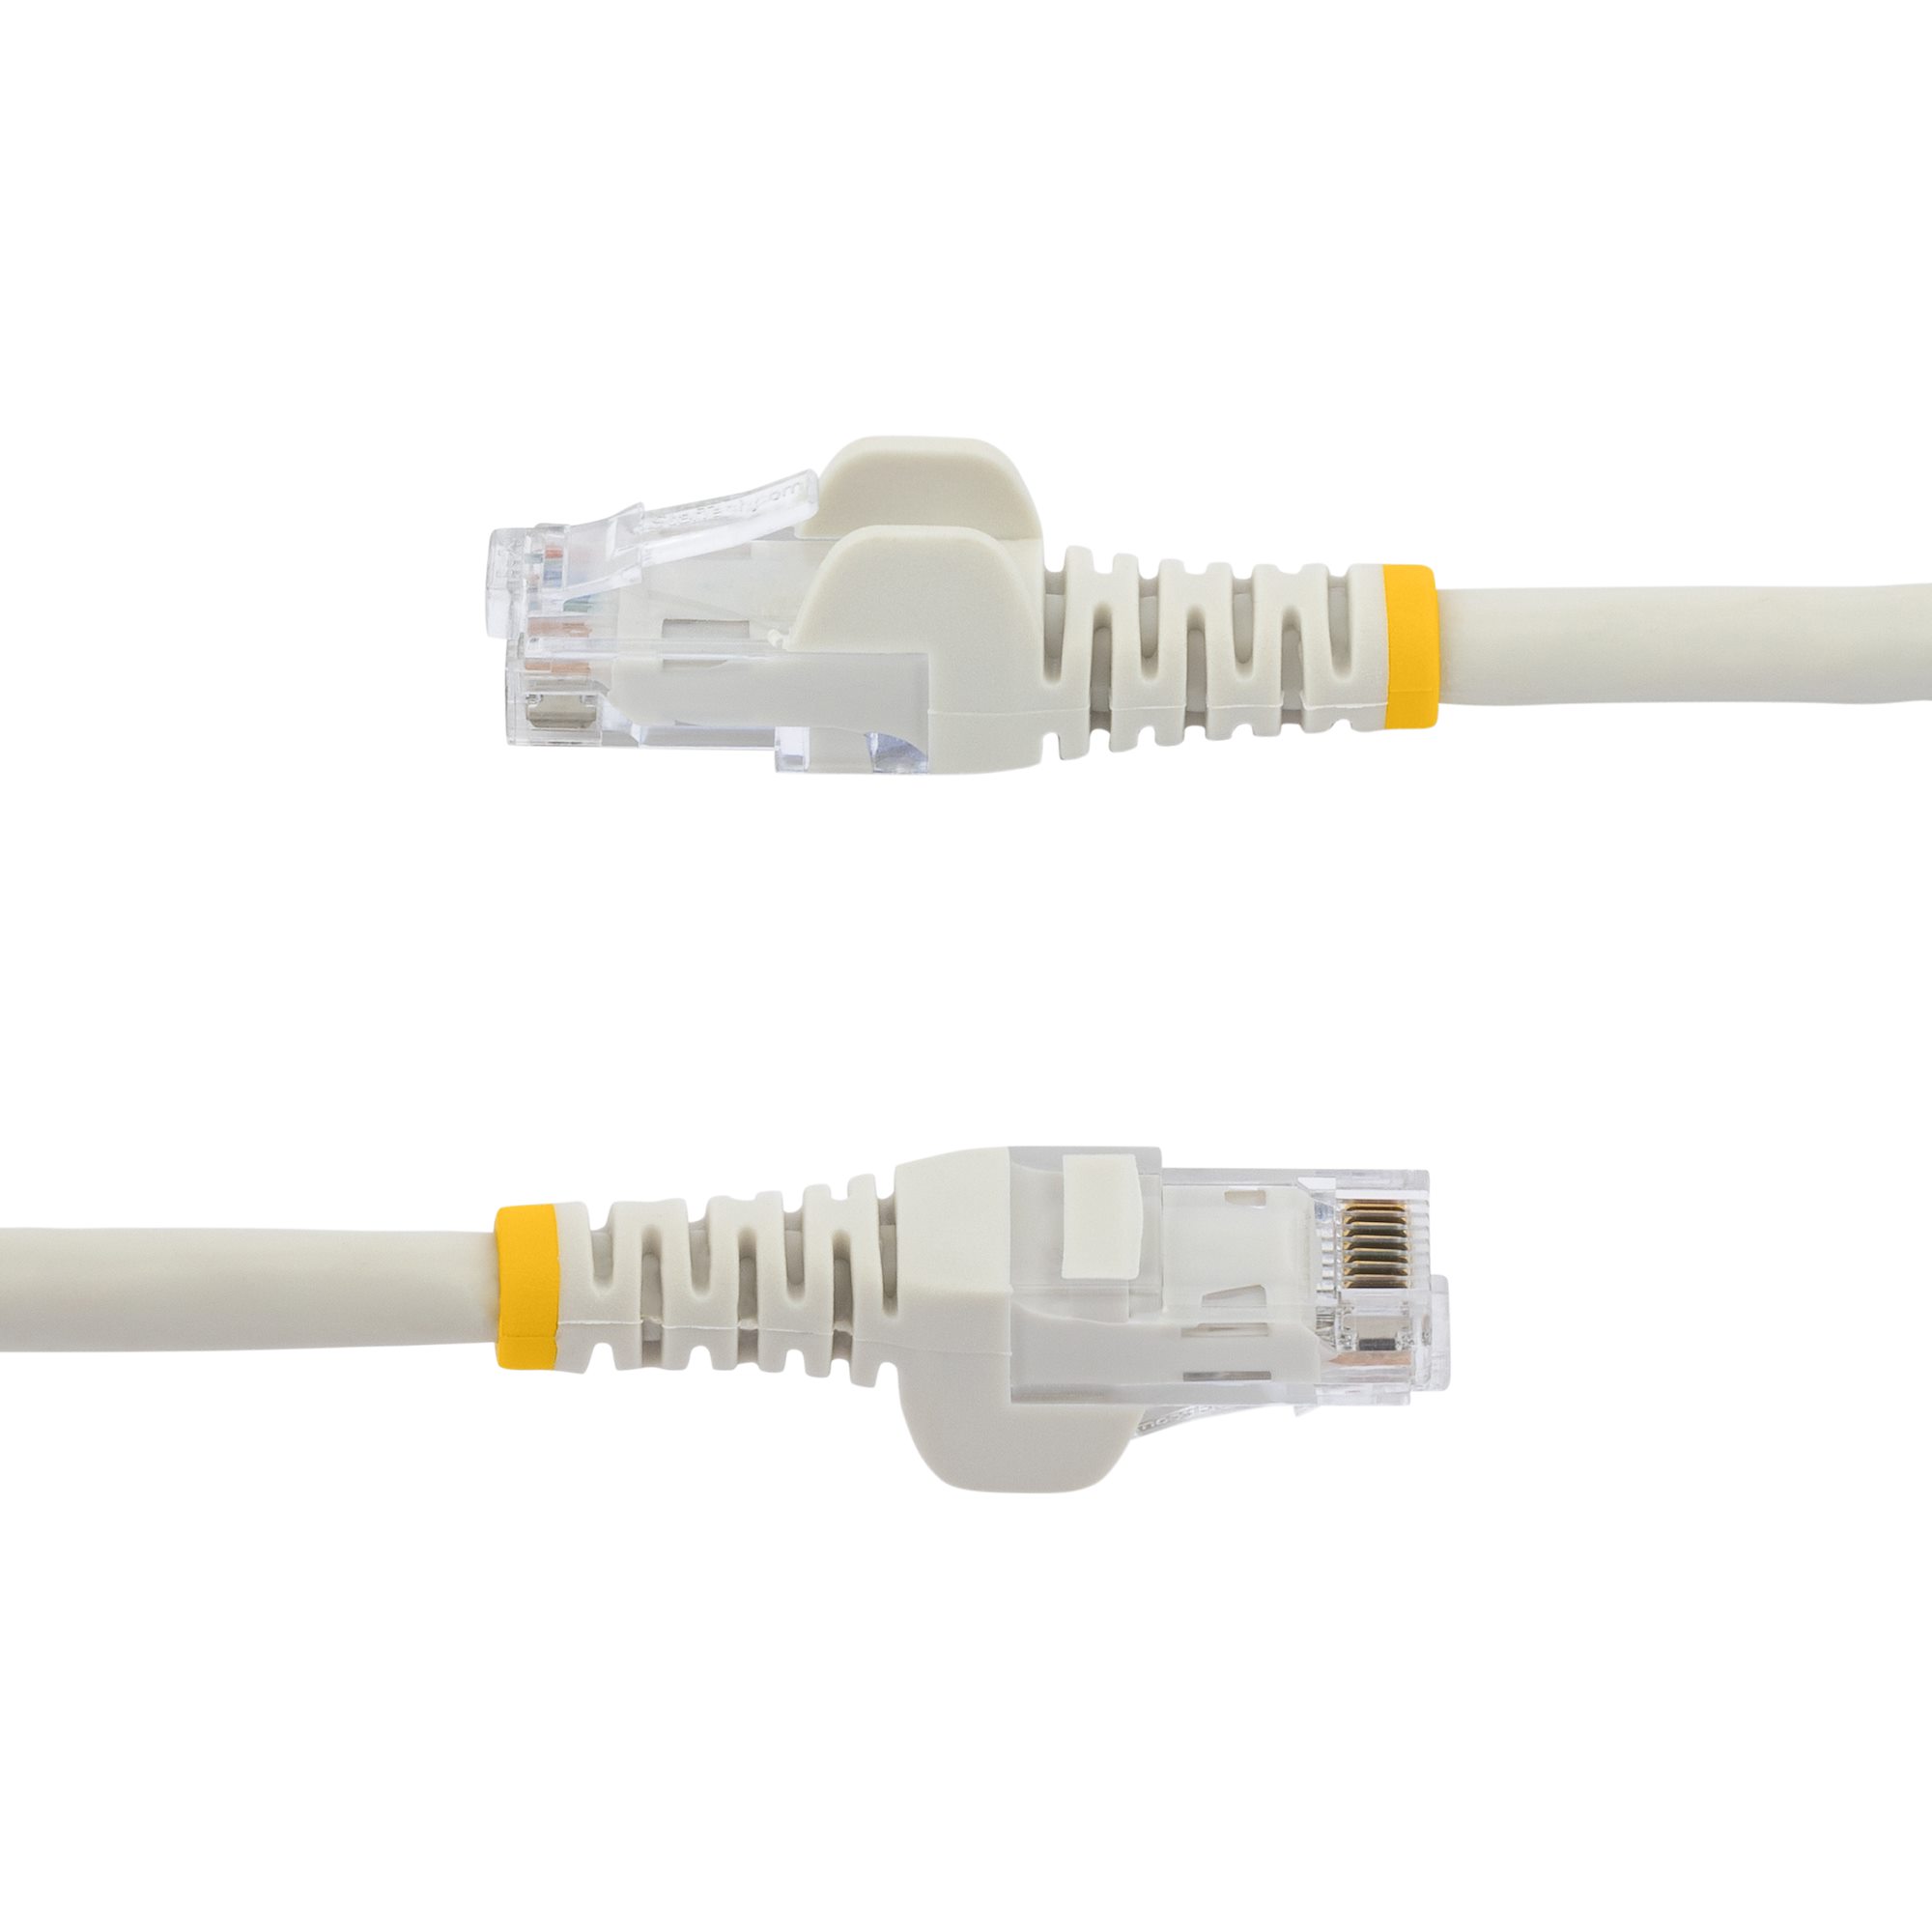 Câble Ethernet RJ45 cat6, câble réseau de 10m - Blanc